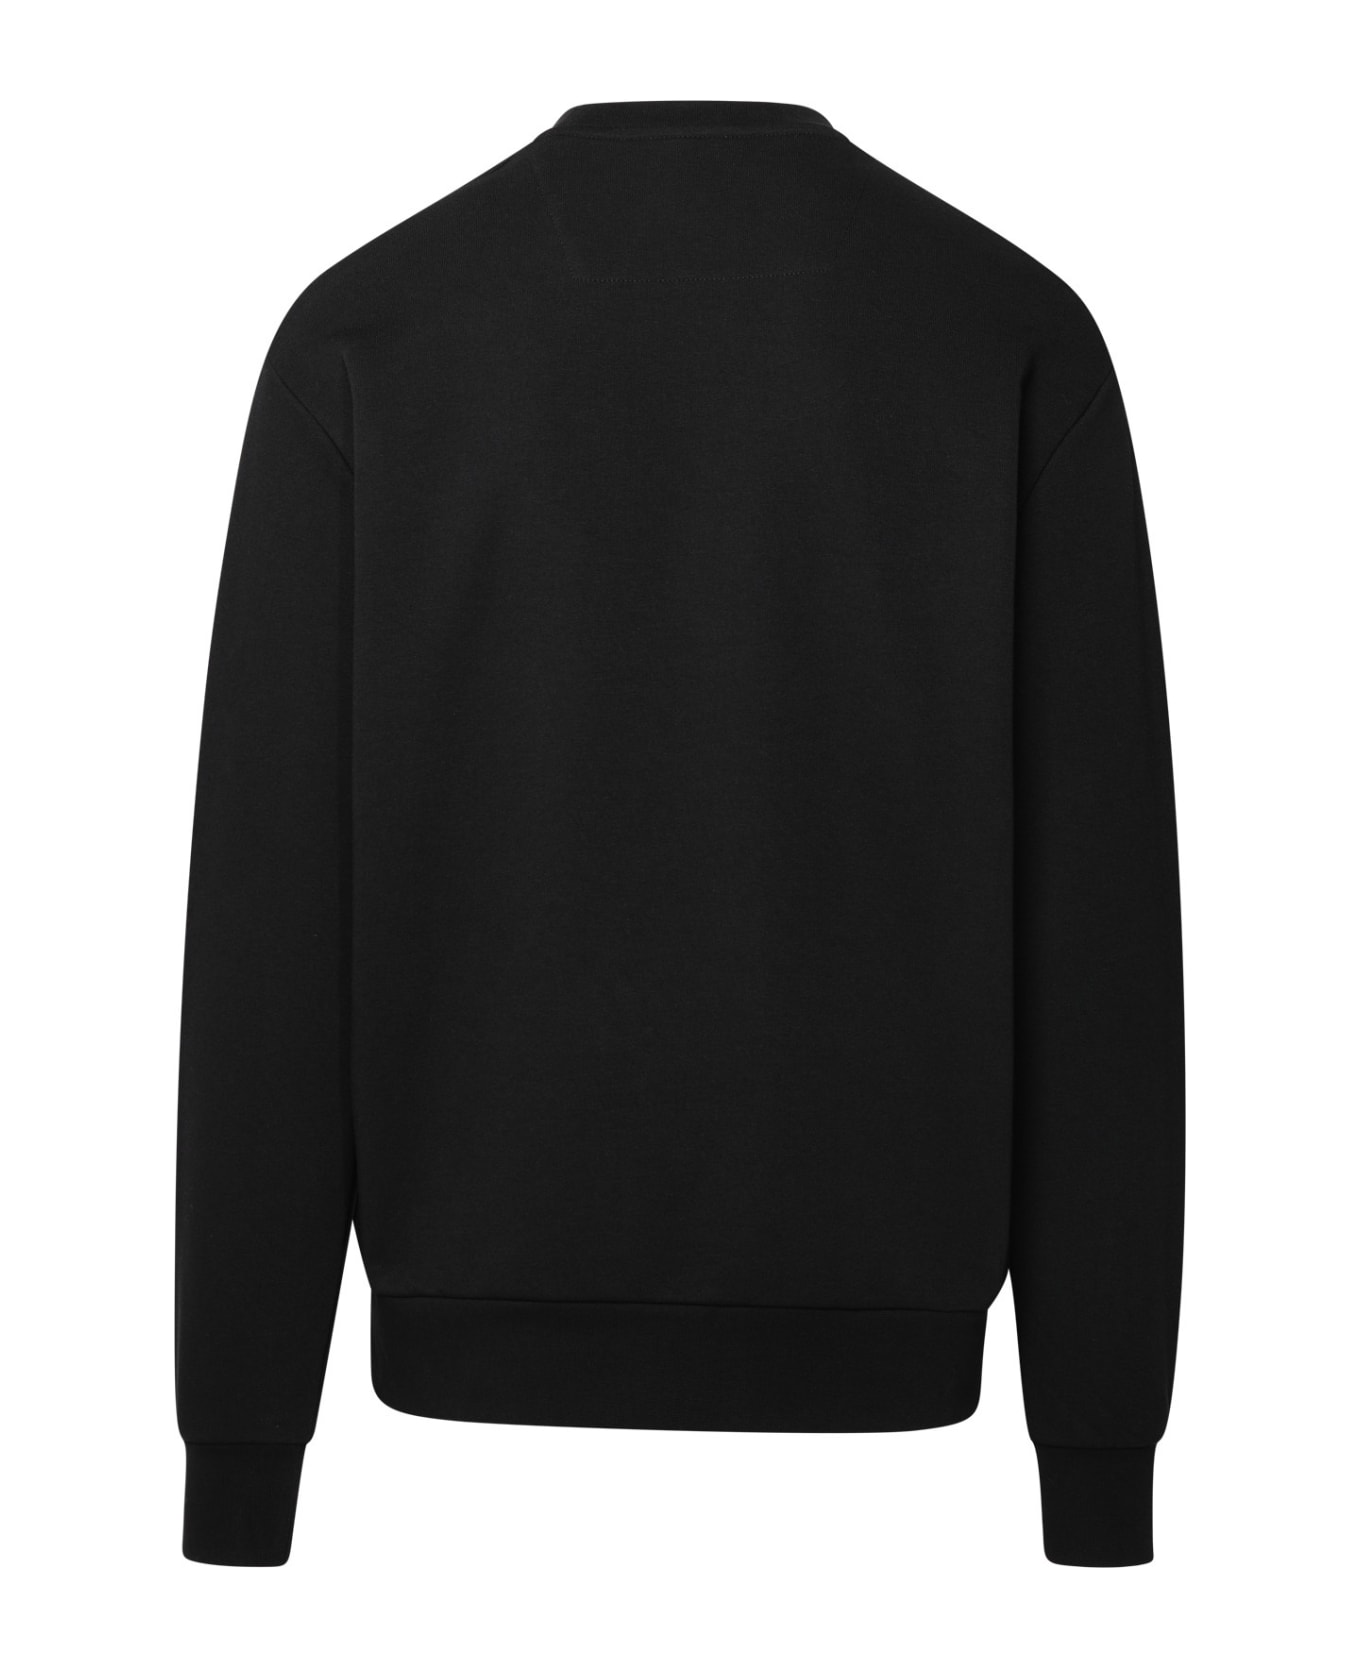 Philipp Plein Black Cotton Blend Sweatshirt - Black フリース